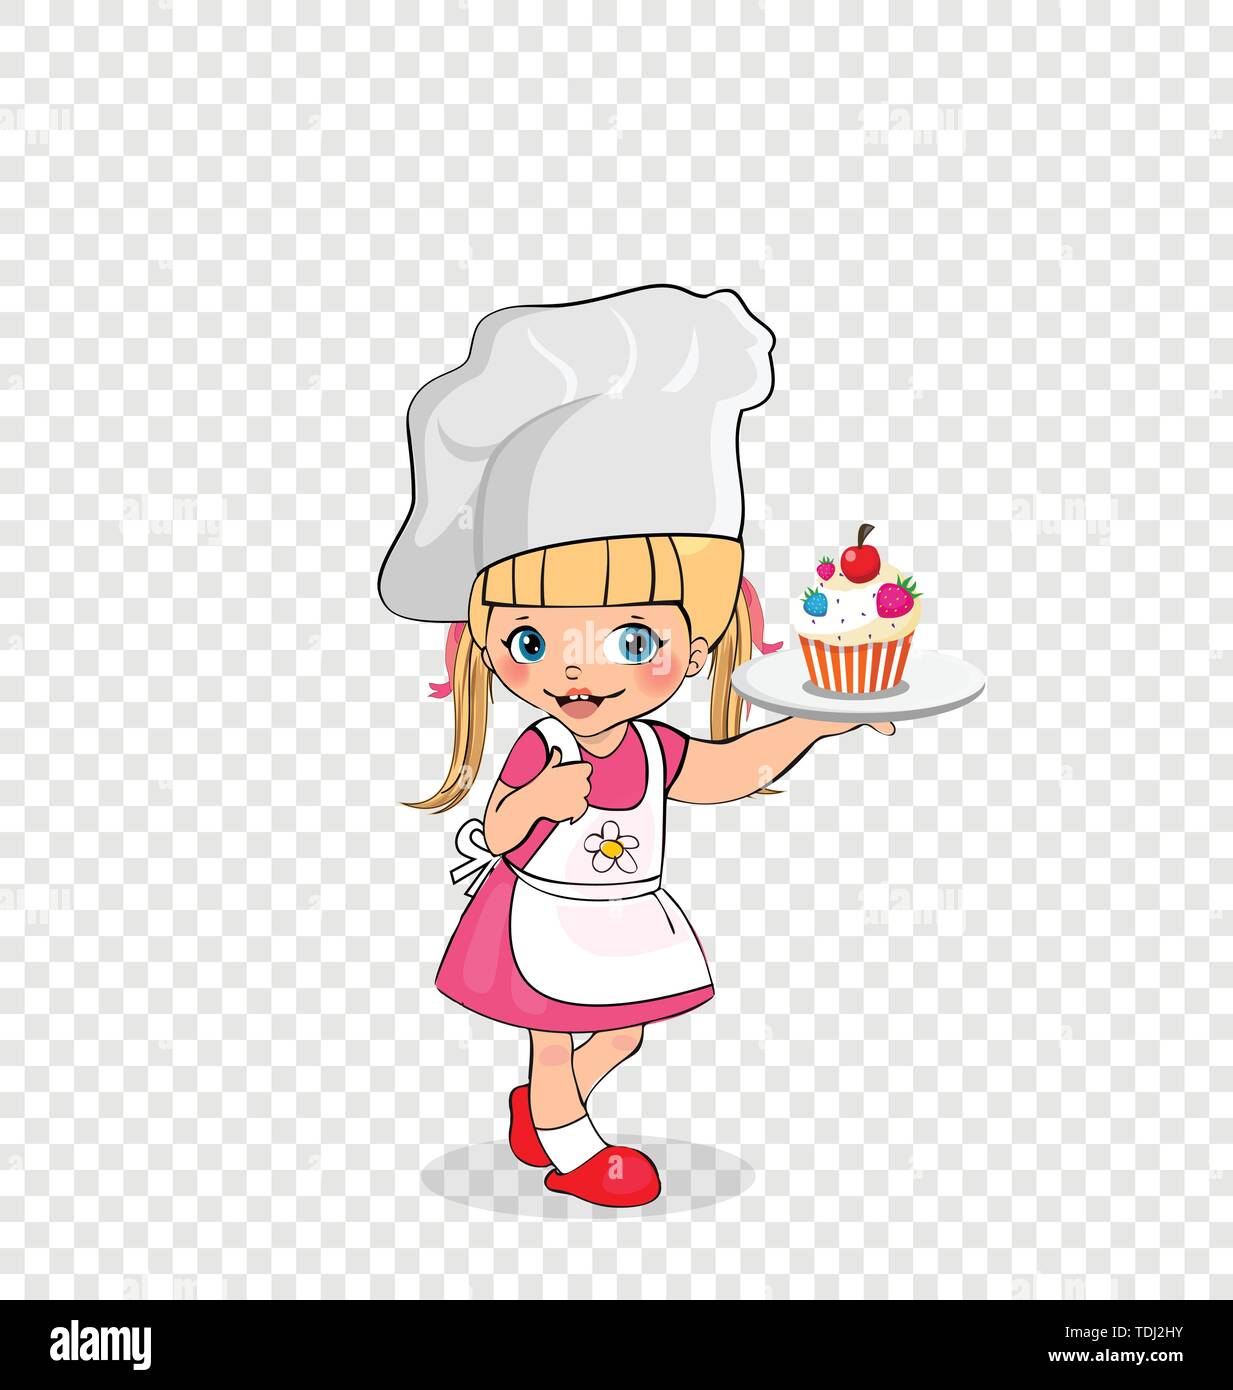 Kleines Mädchen Chef mit Kuchen auf Platte, Zicklein in Schürze und Mütze mit Kuchen auf Fach, Baby Menü Charakter, Kocher, Kochen Kind isoliert auf transparente Backgr Stock Vektor